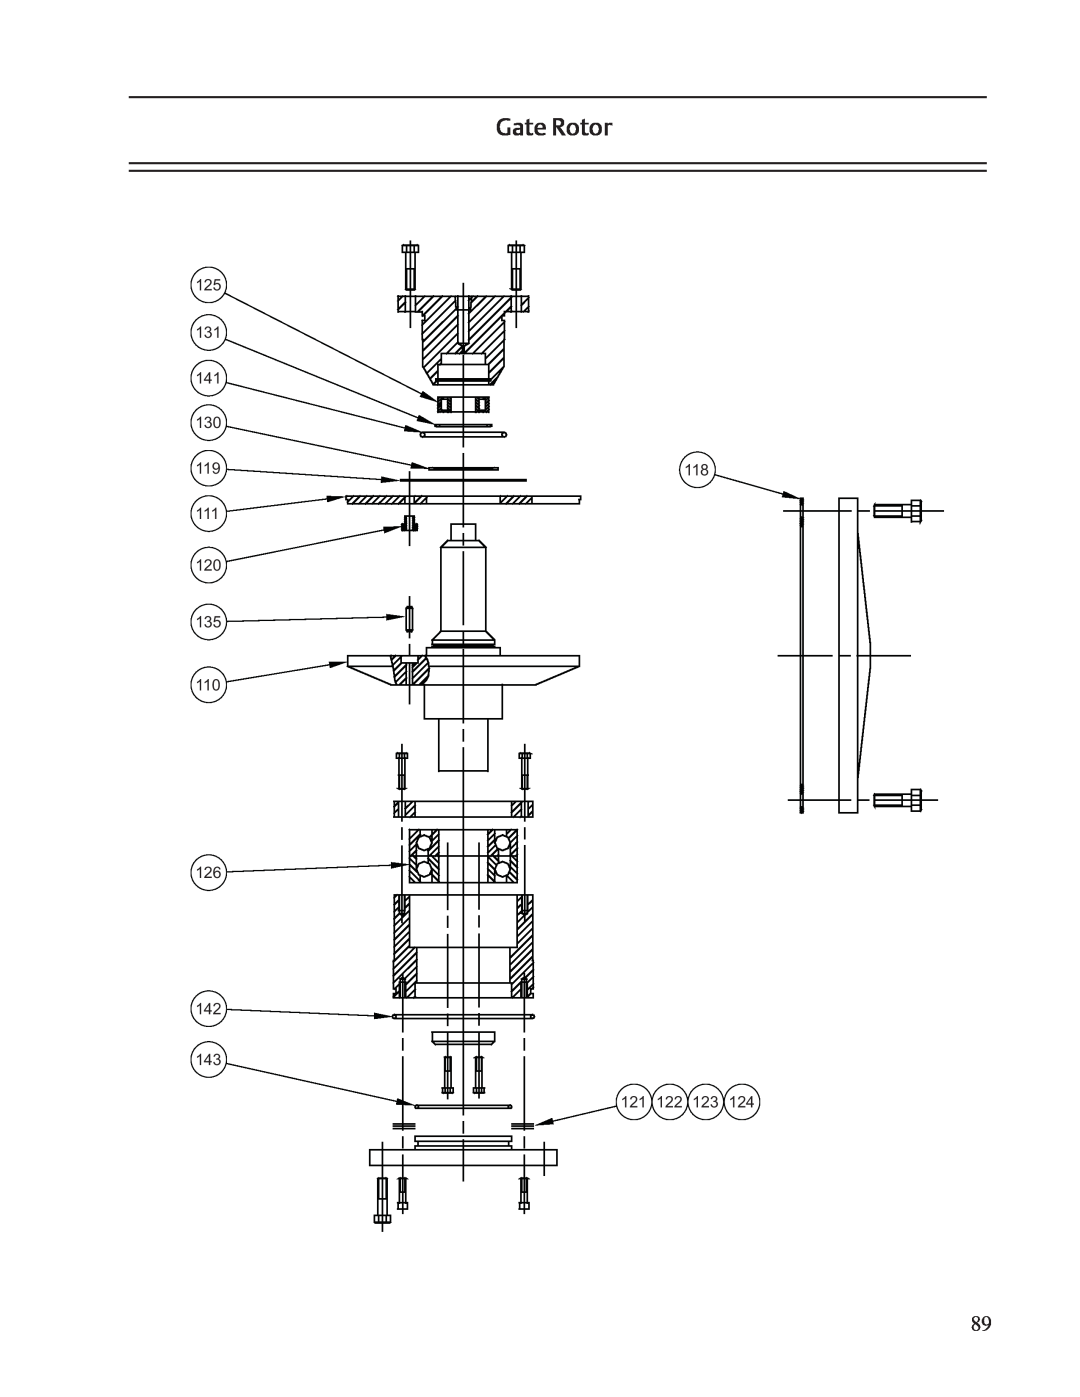 Emerson VSS, VSR, VSM service manual Gate Rotor 